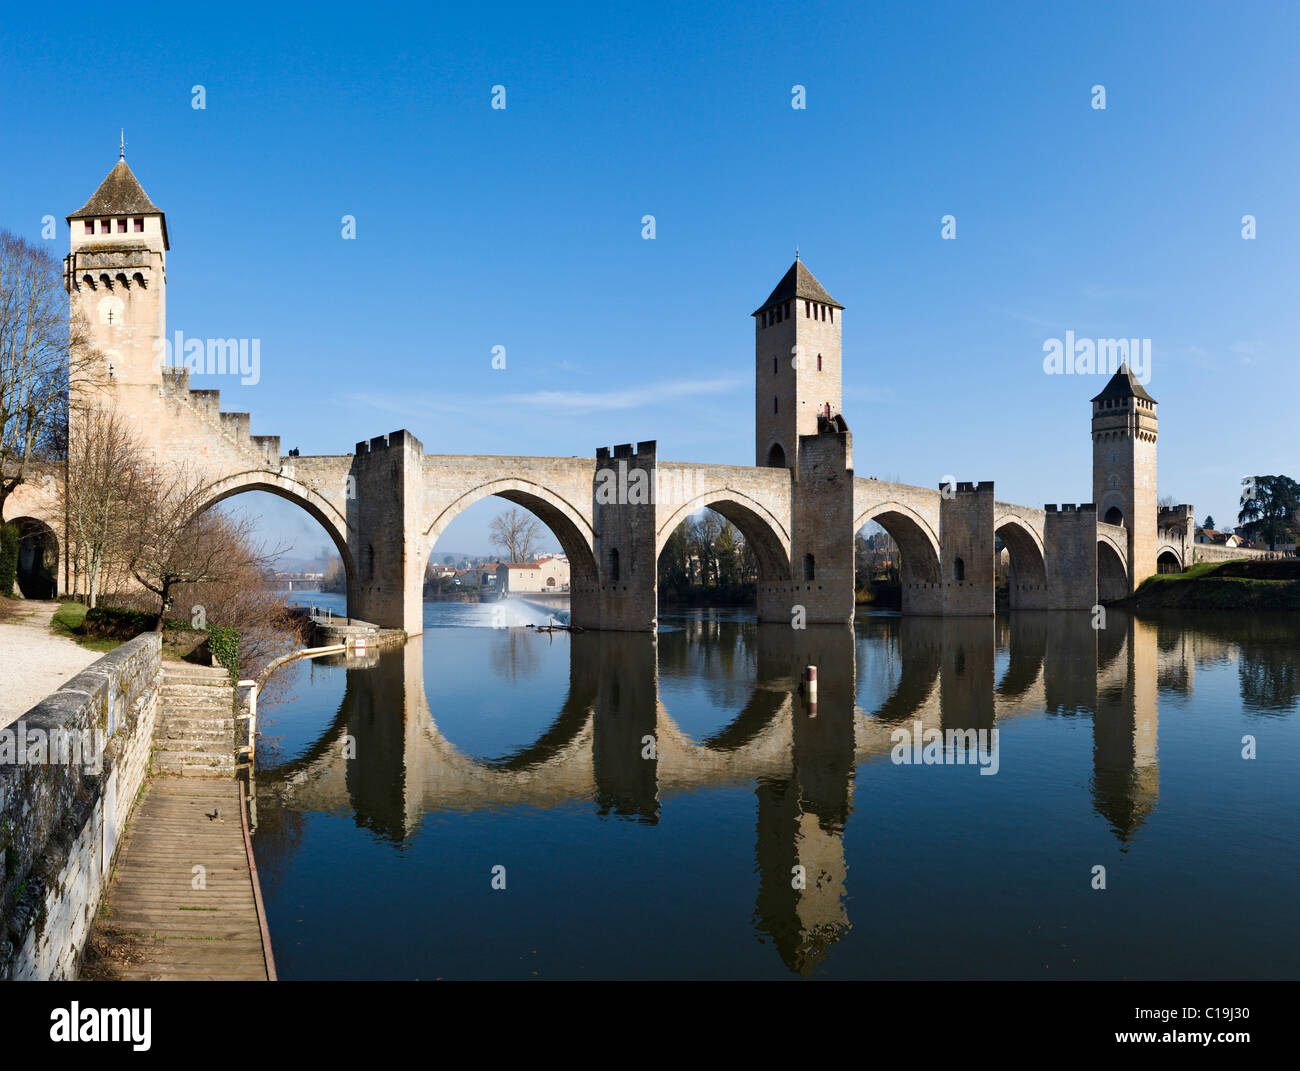 Le Pont Valentre médiévale sur la rivière Lot, Cahors, Lot, France Banque D'Images